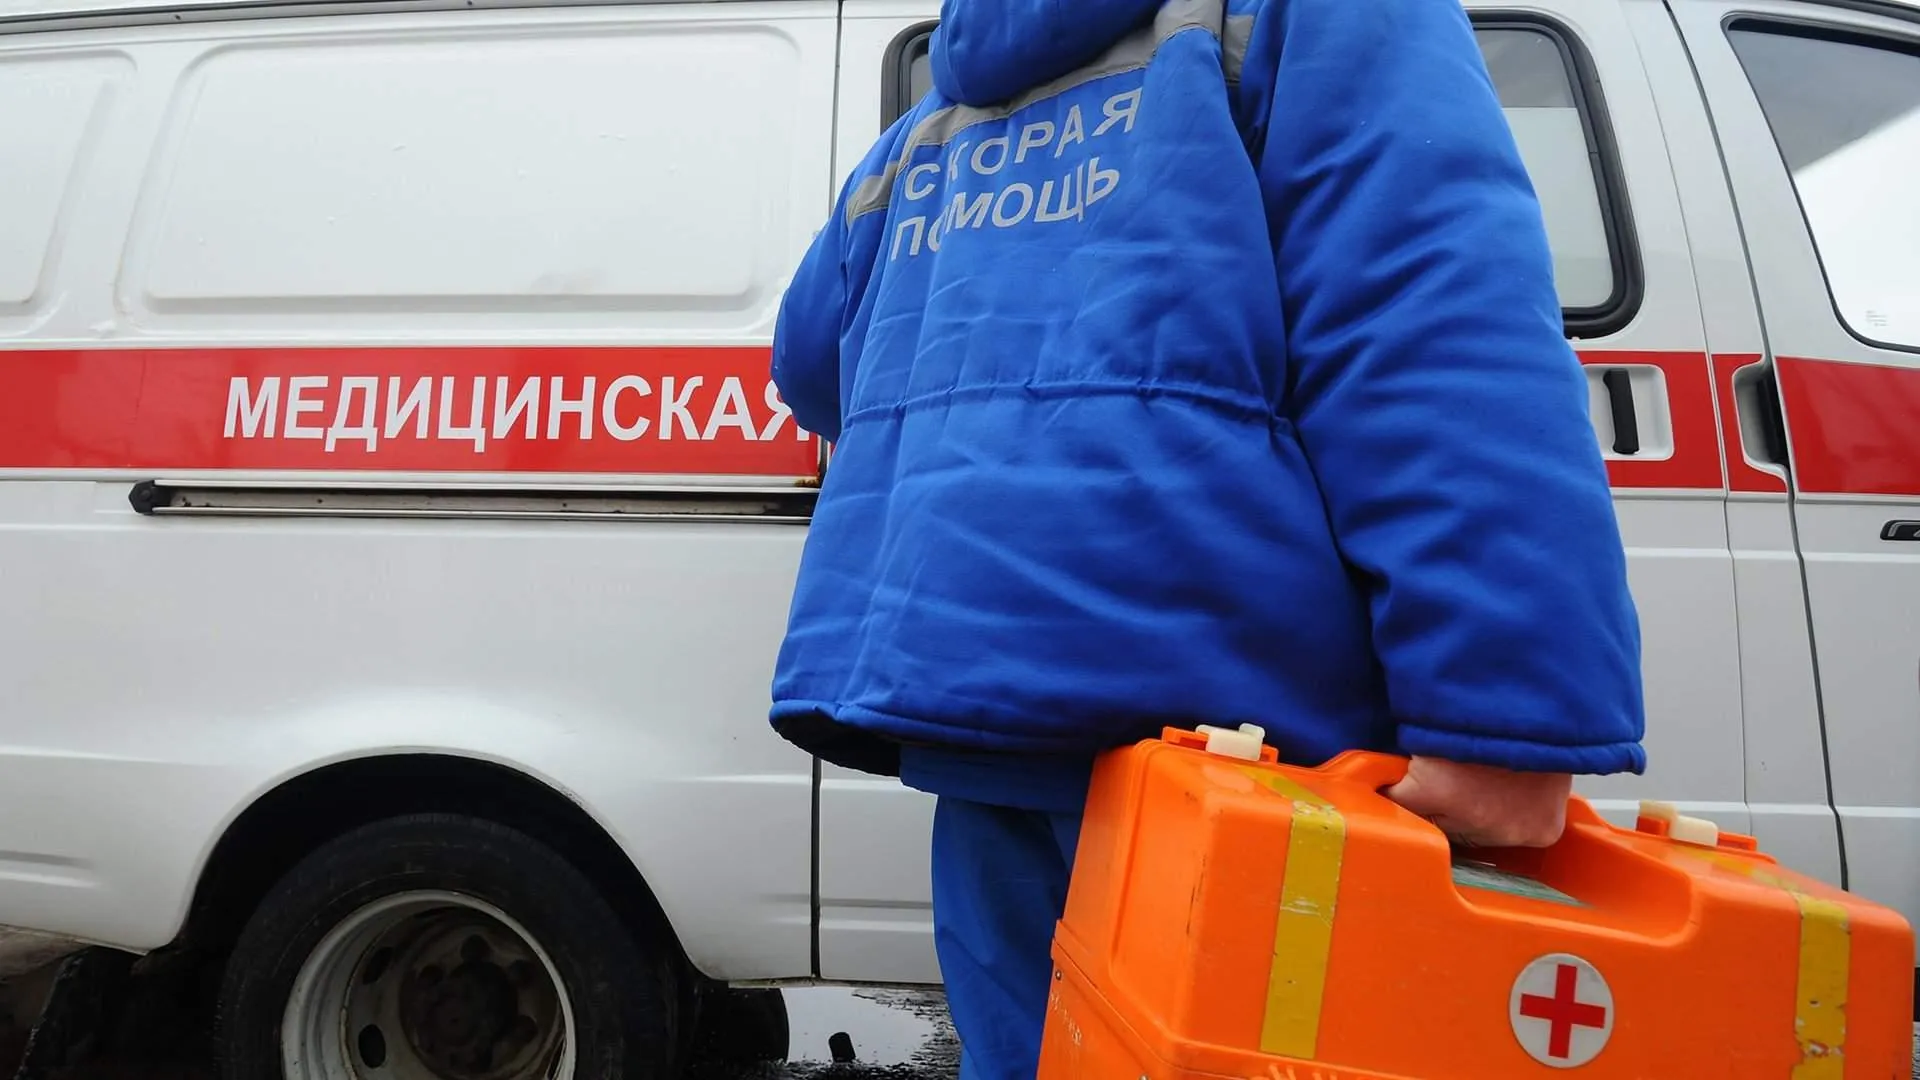 Шестилетний мальчик спас впавшую в кому мать в Москве